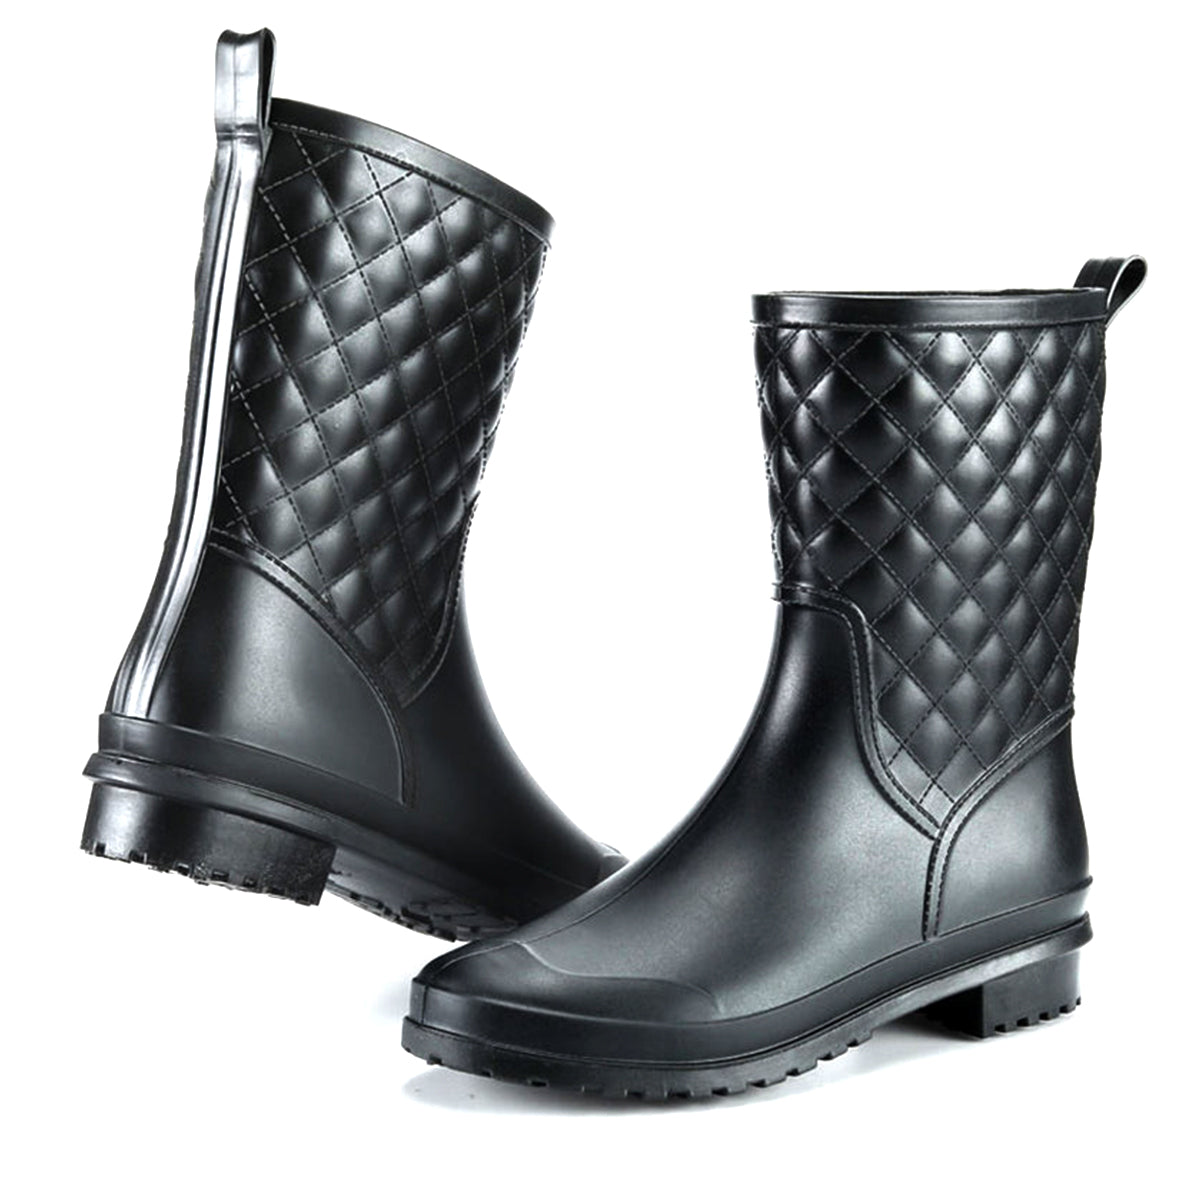 Alpha Short Gumboots Waterproof Boots